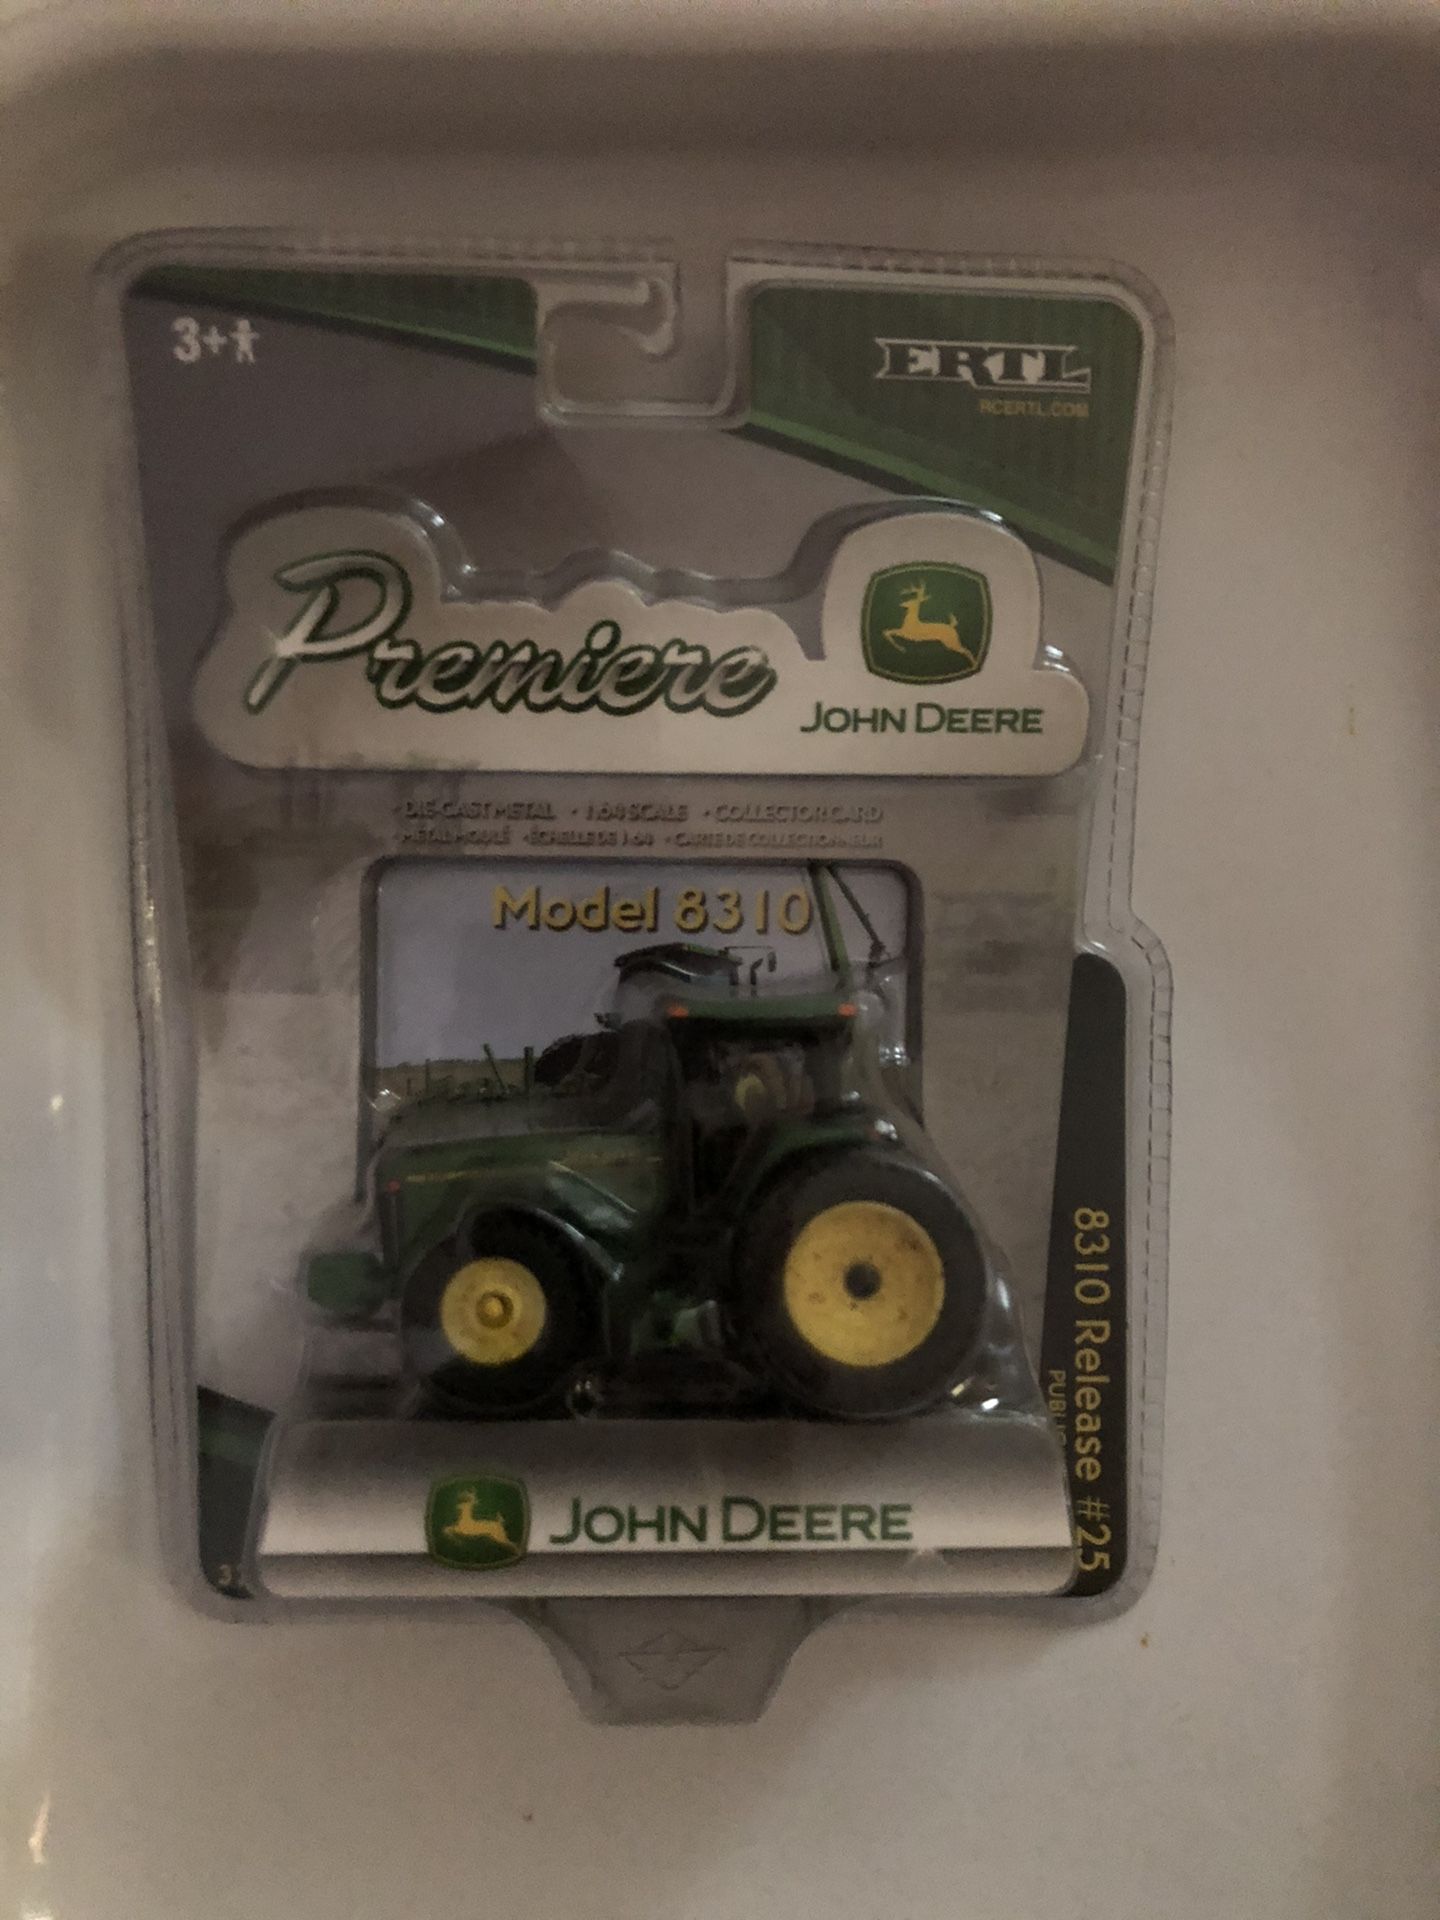 Premier John Deere tractor model 8310